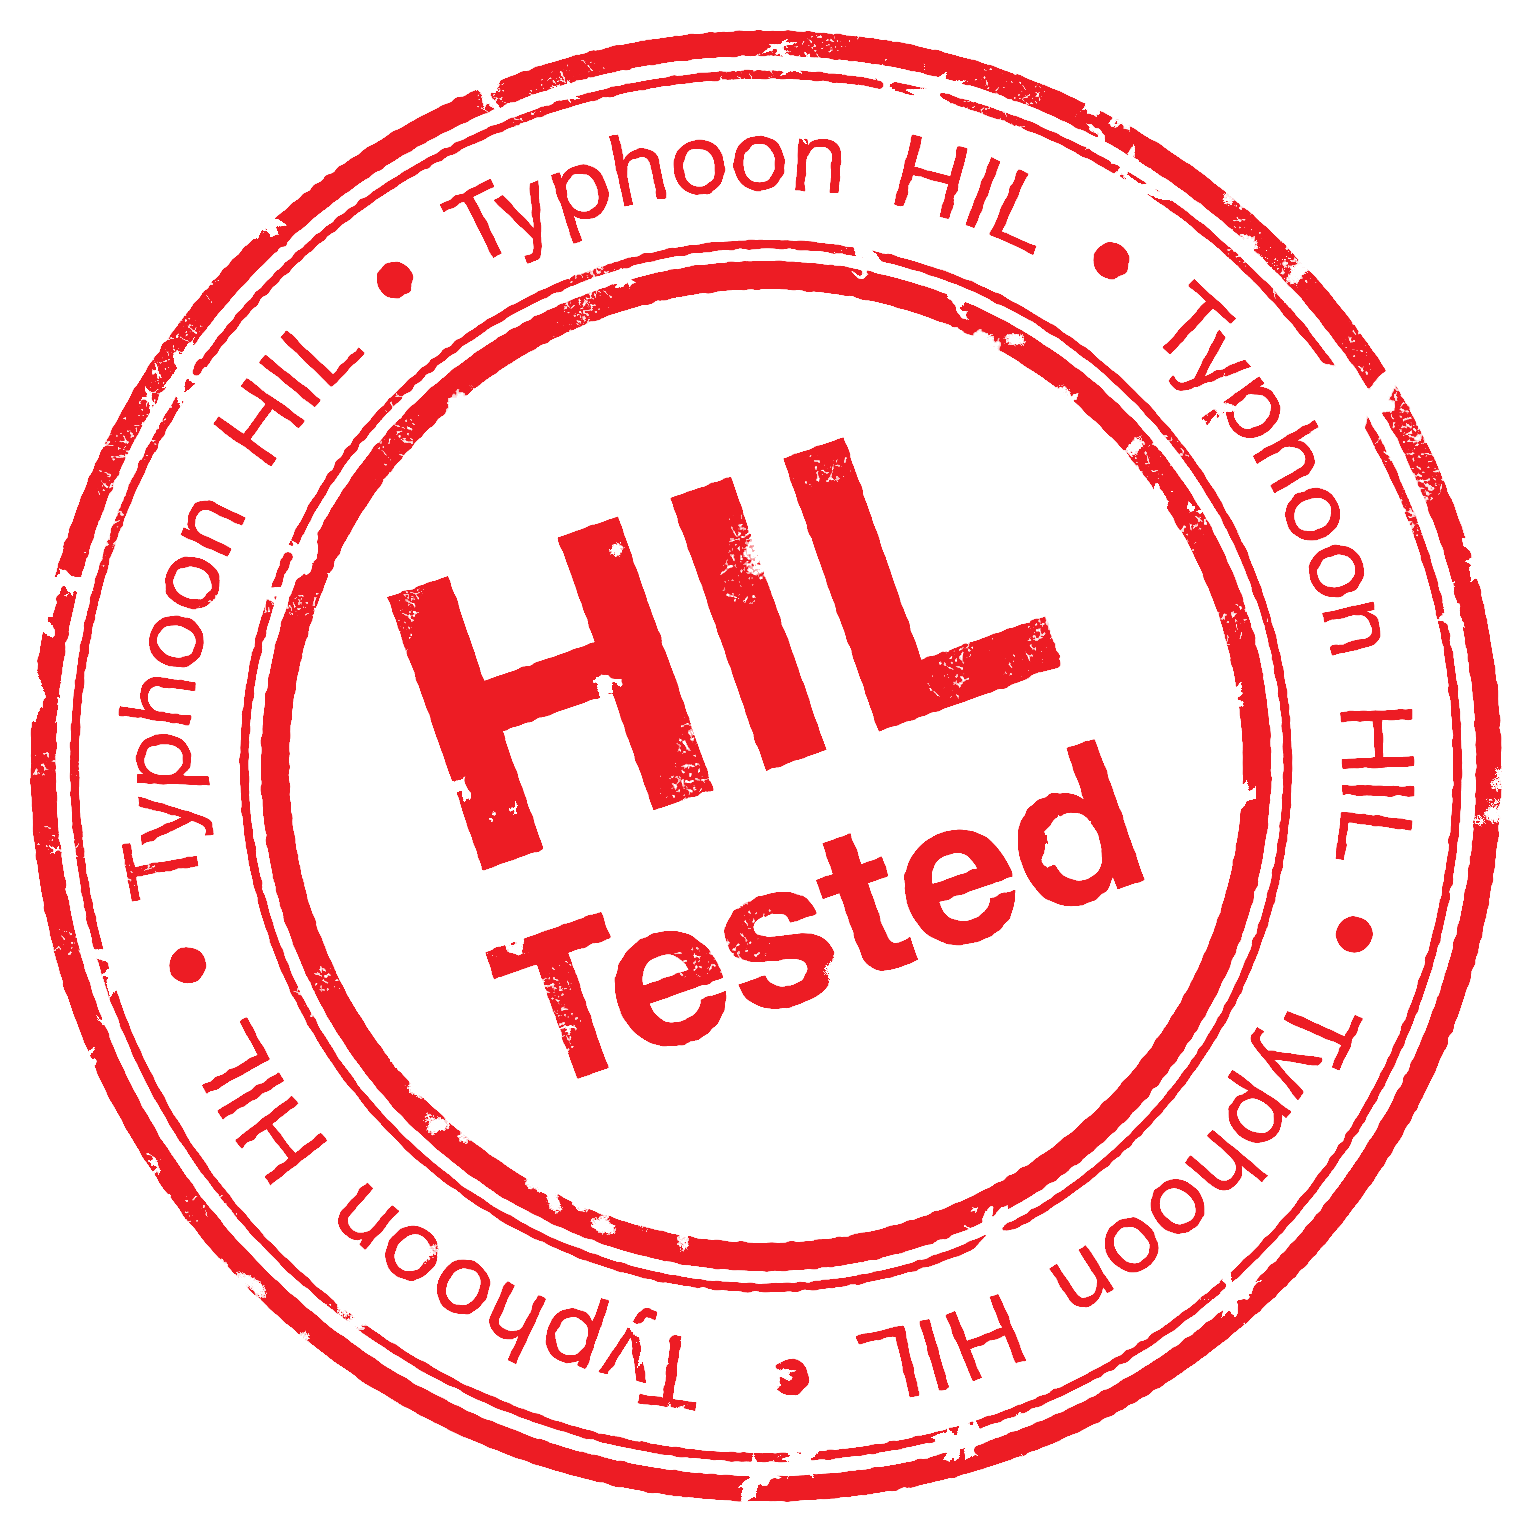 HIL Tested: Poderosos Desempenho, Funcionalidade e Qualidade através de Teste Baseado em Modelo